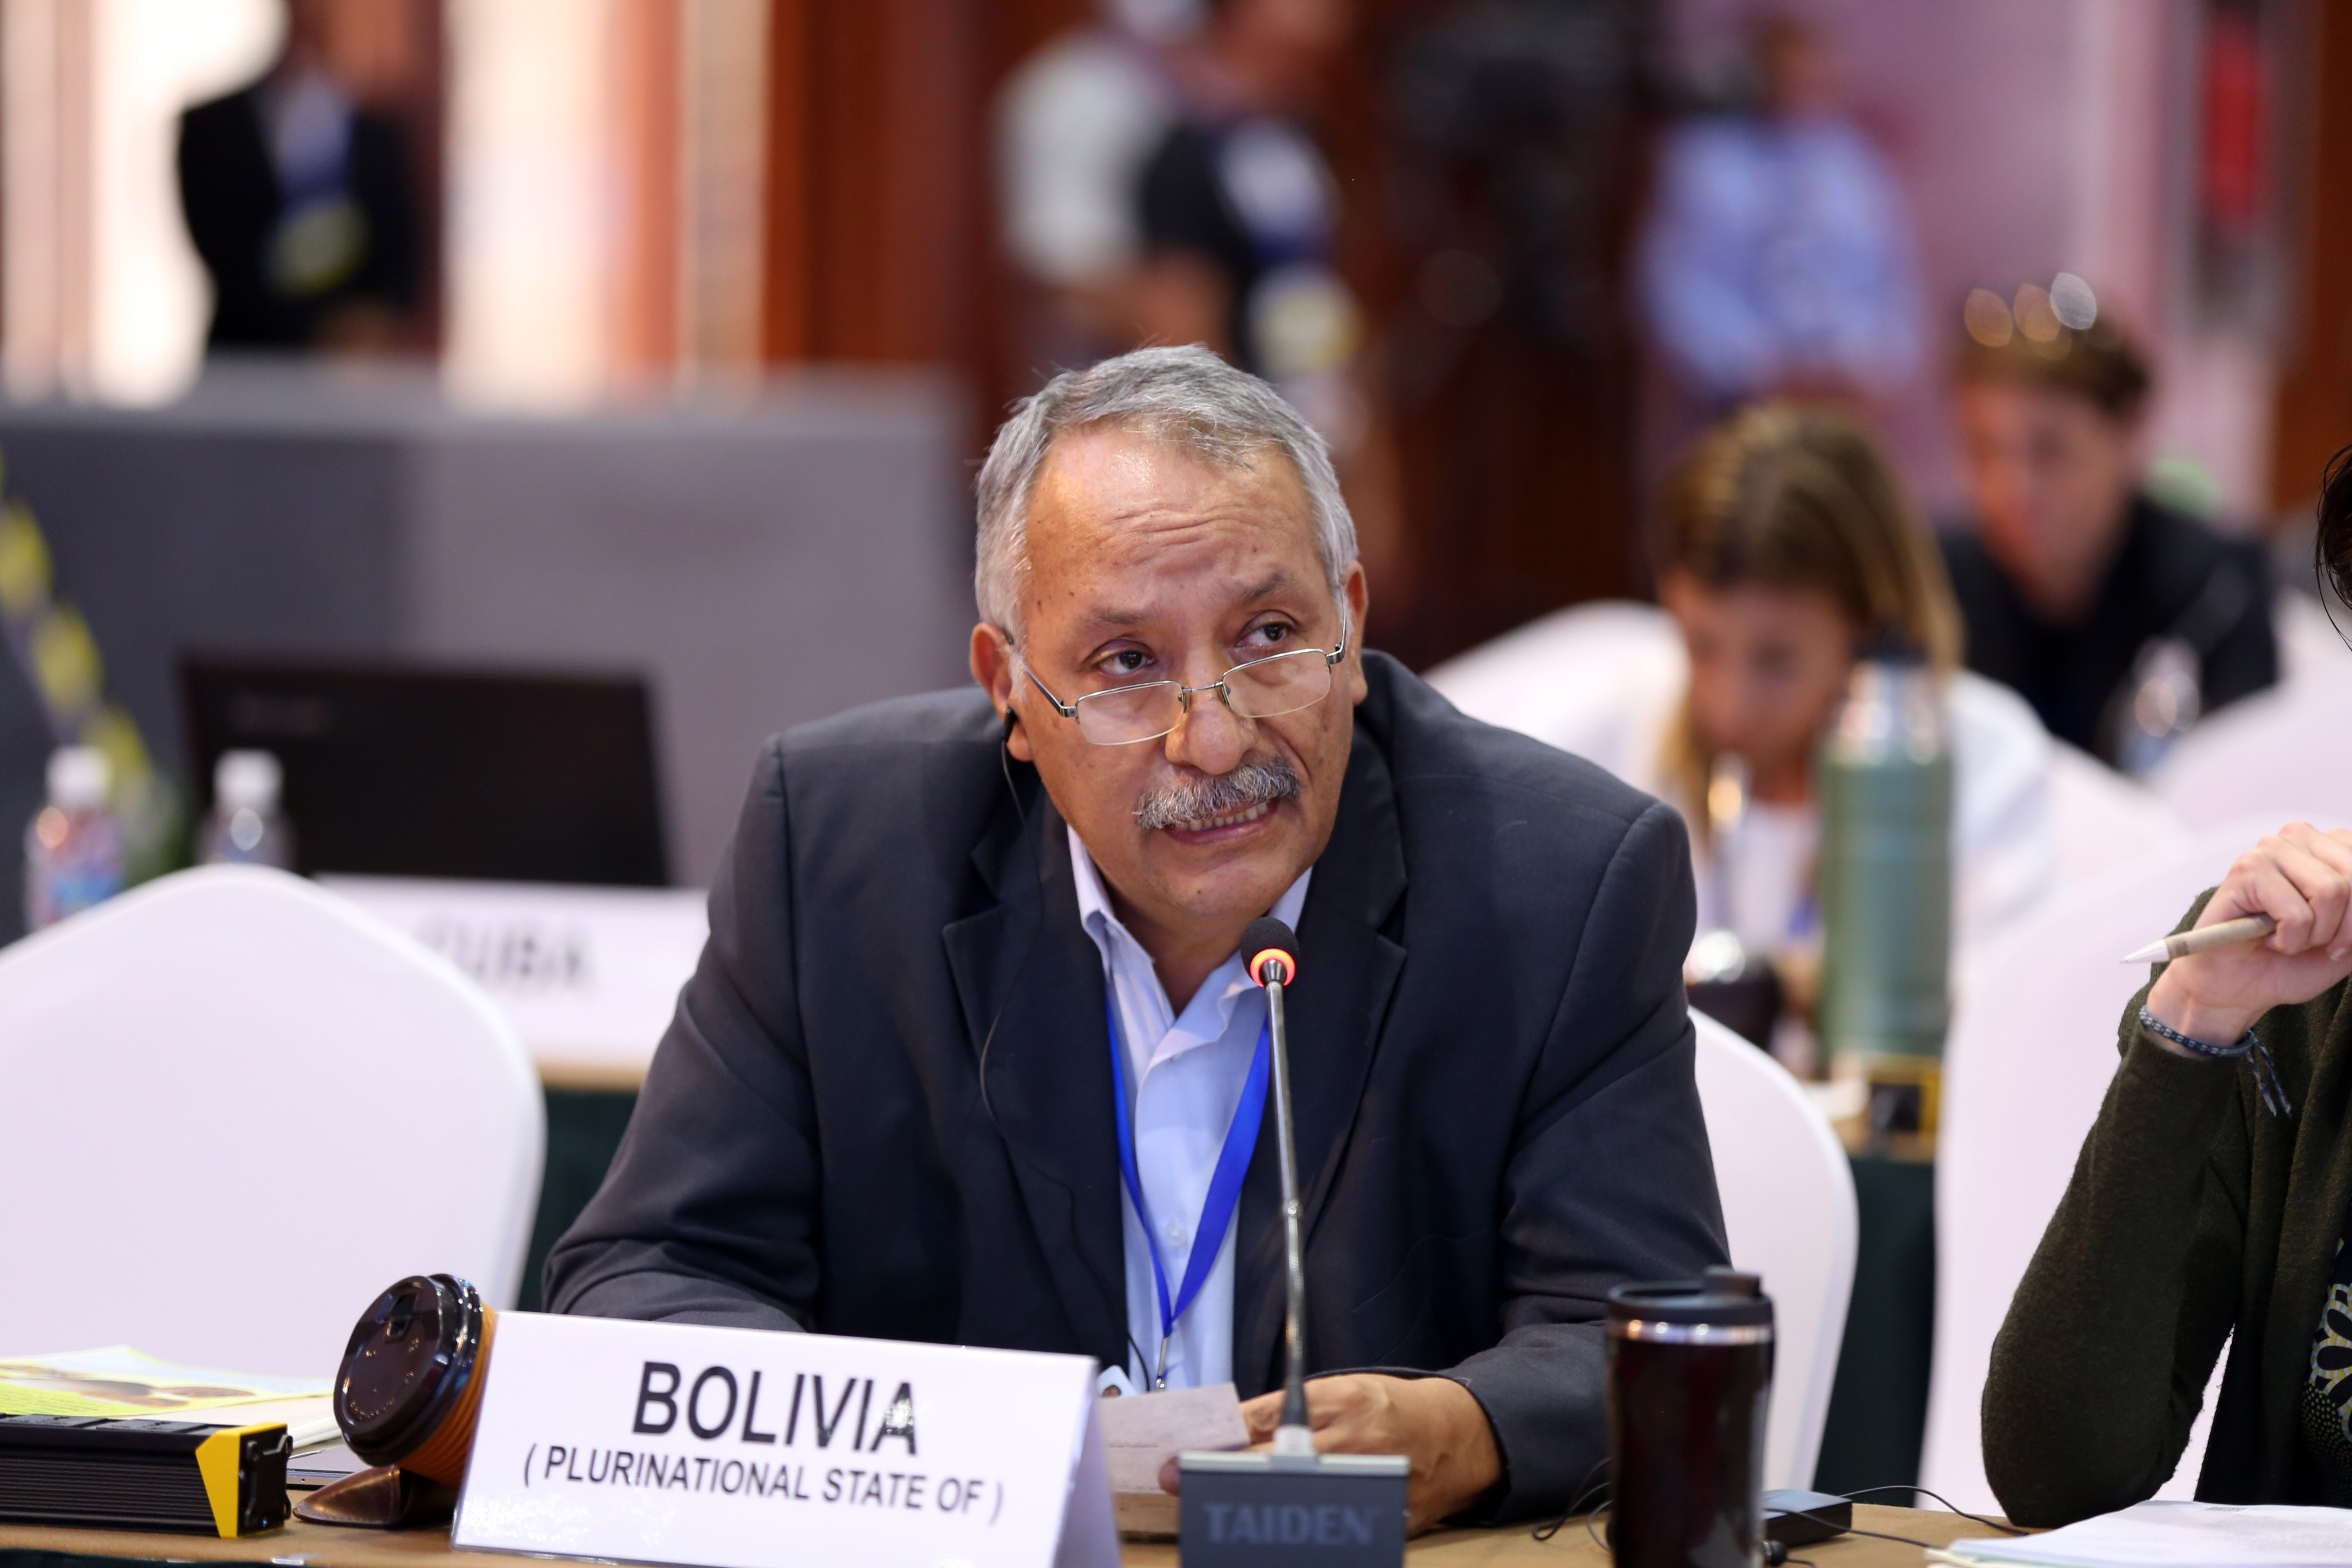 La aprobación reciente de la ley del etanol ha sido acelerada en Bolivia:YPFB paga doble por litro de etanol